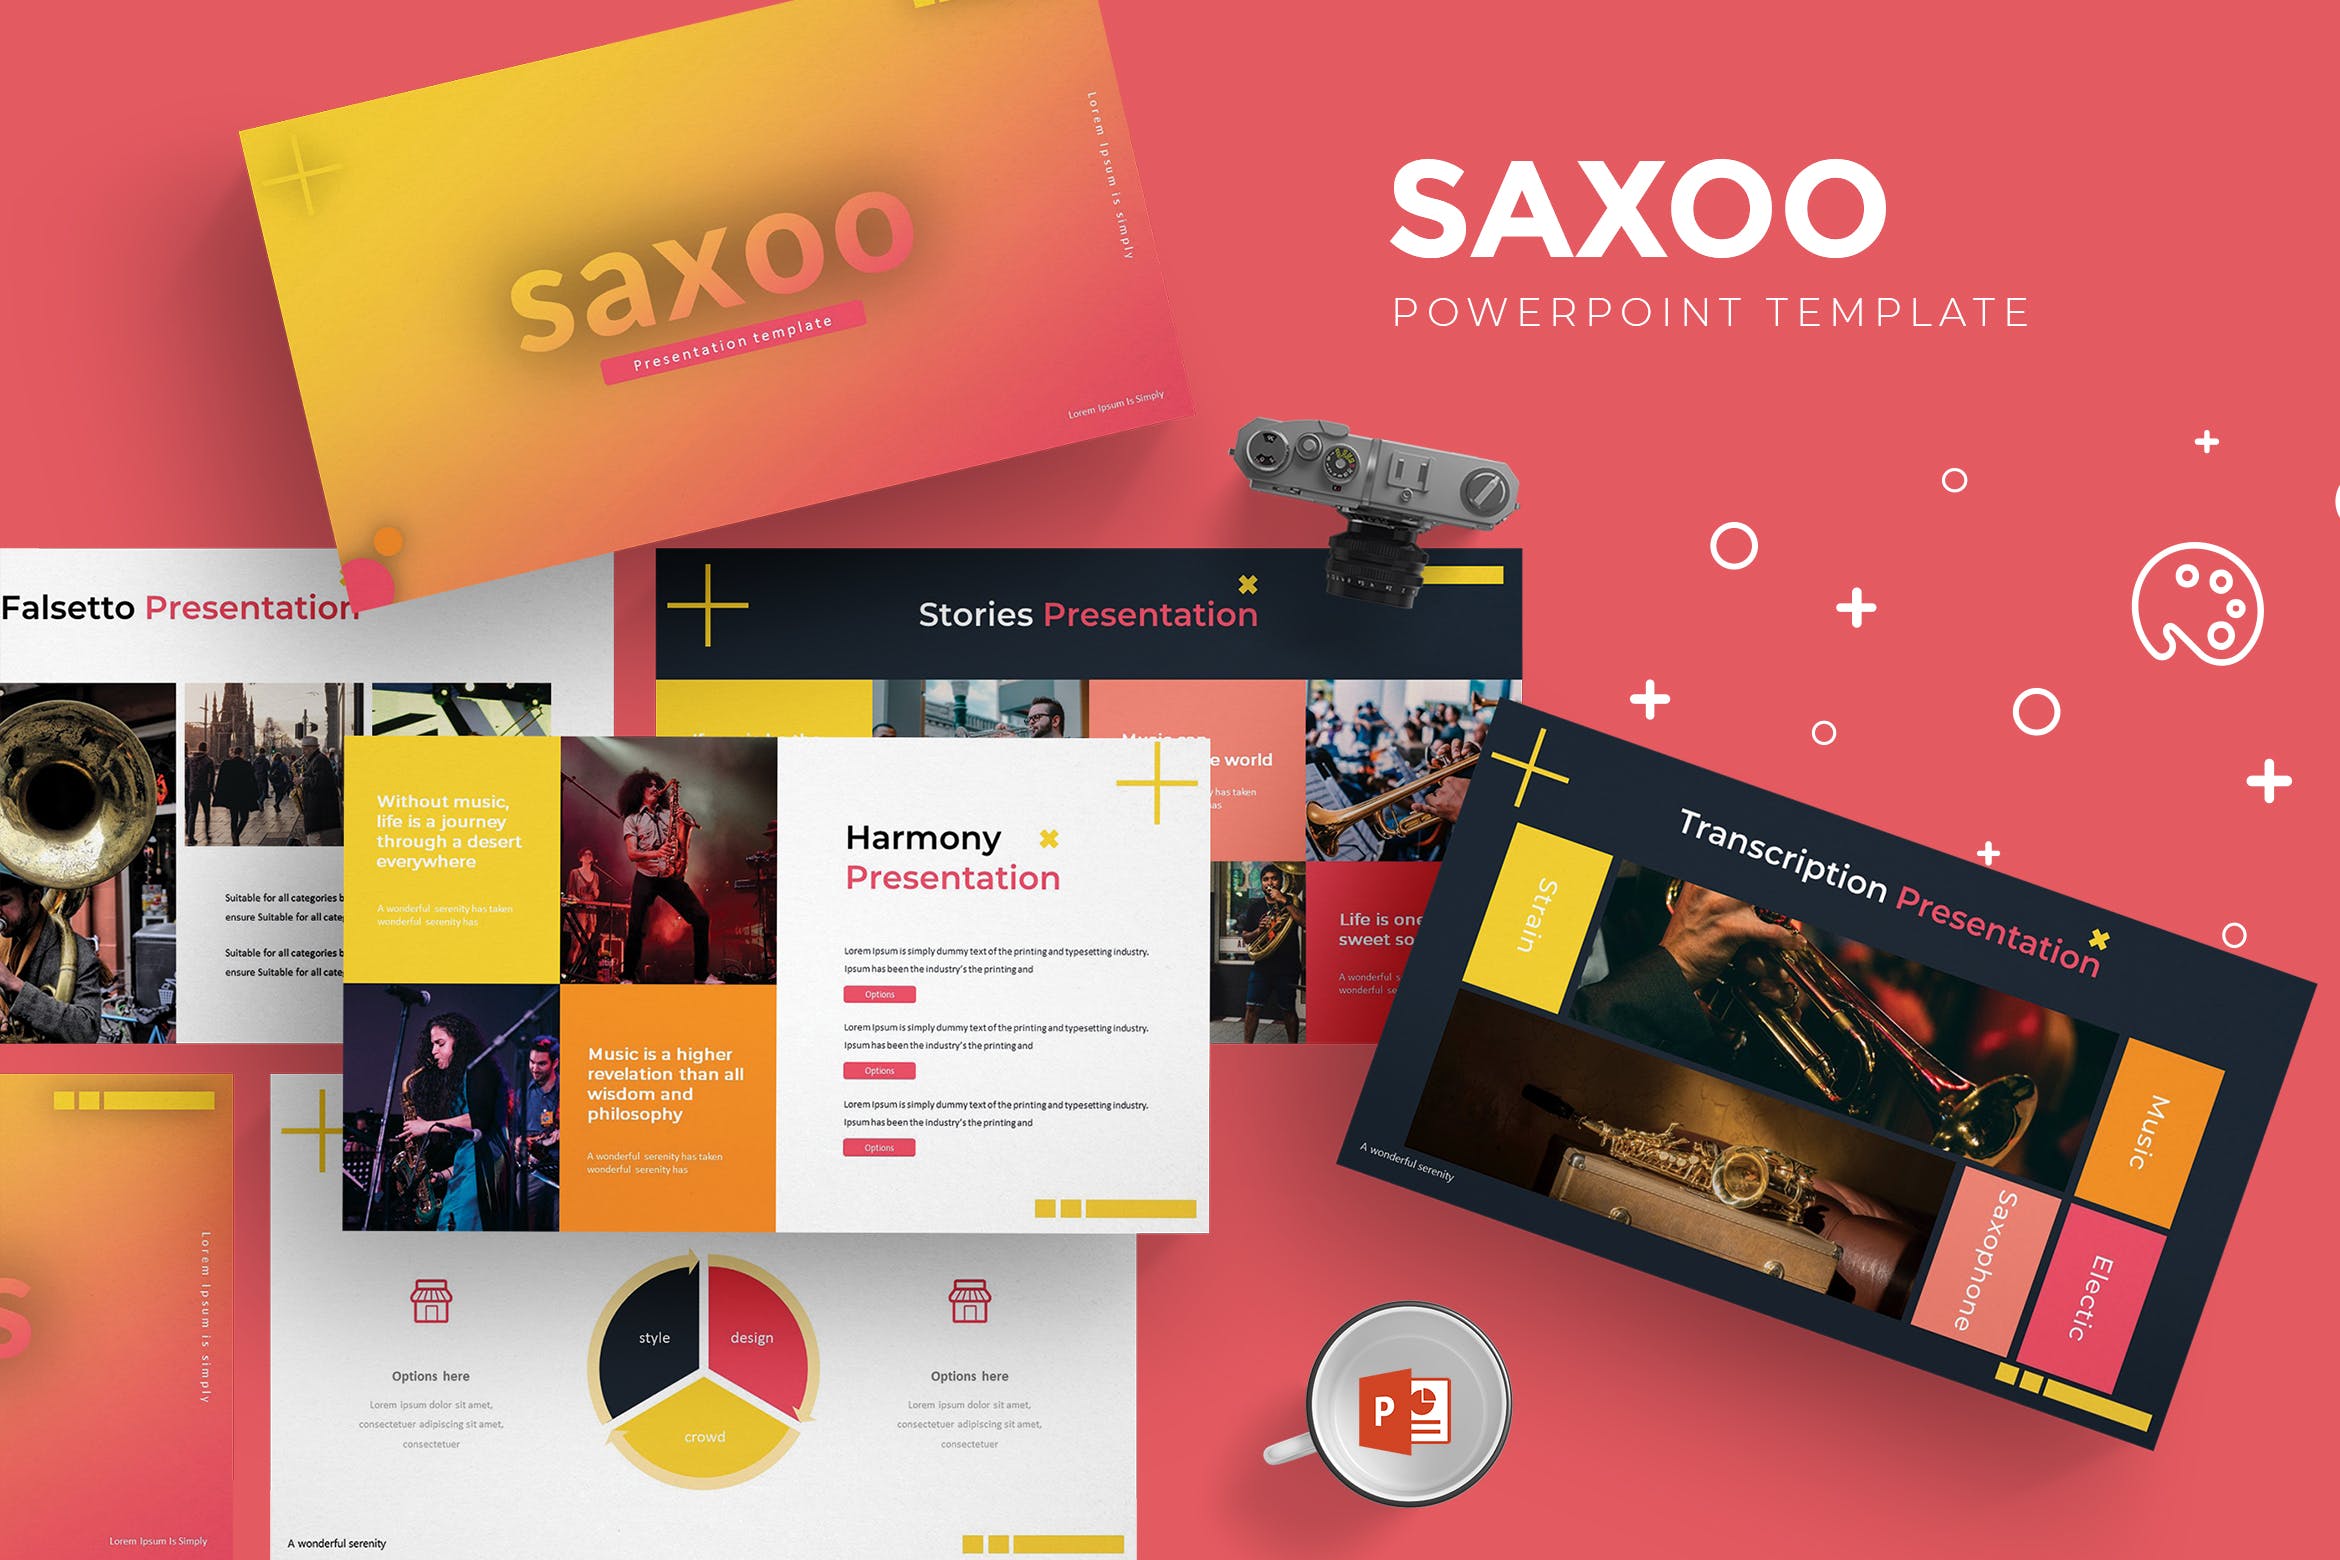 乐队音乐表演活动策划PPT幻灯片模板 Saxoo – Powerpoint Template插图